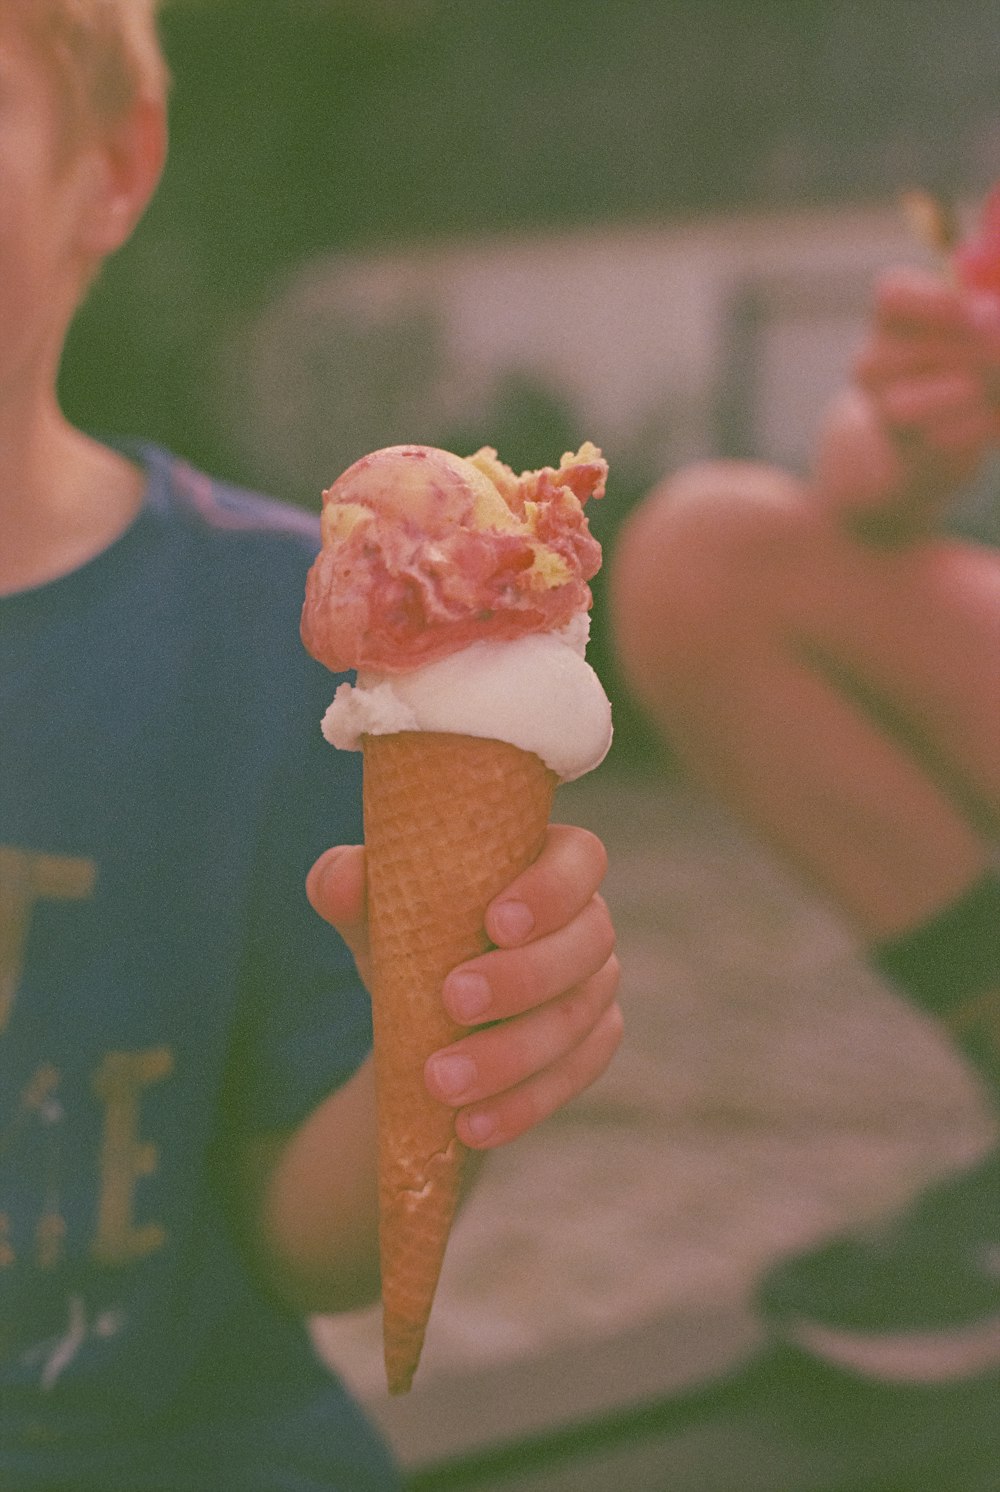 アイスクリームコーンを食べる少年